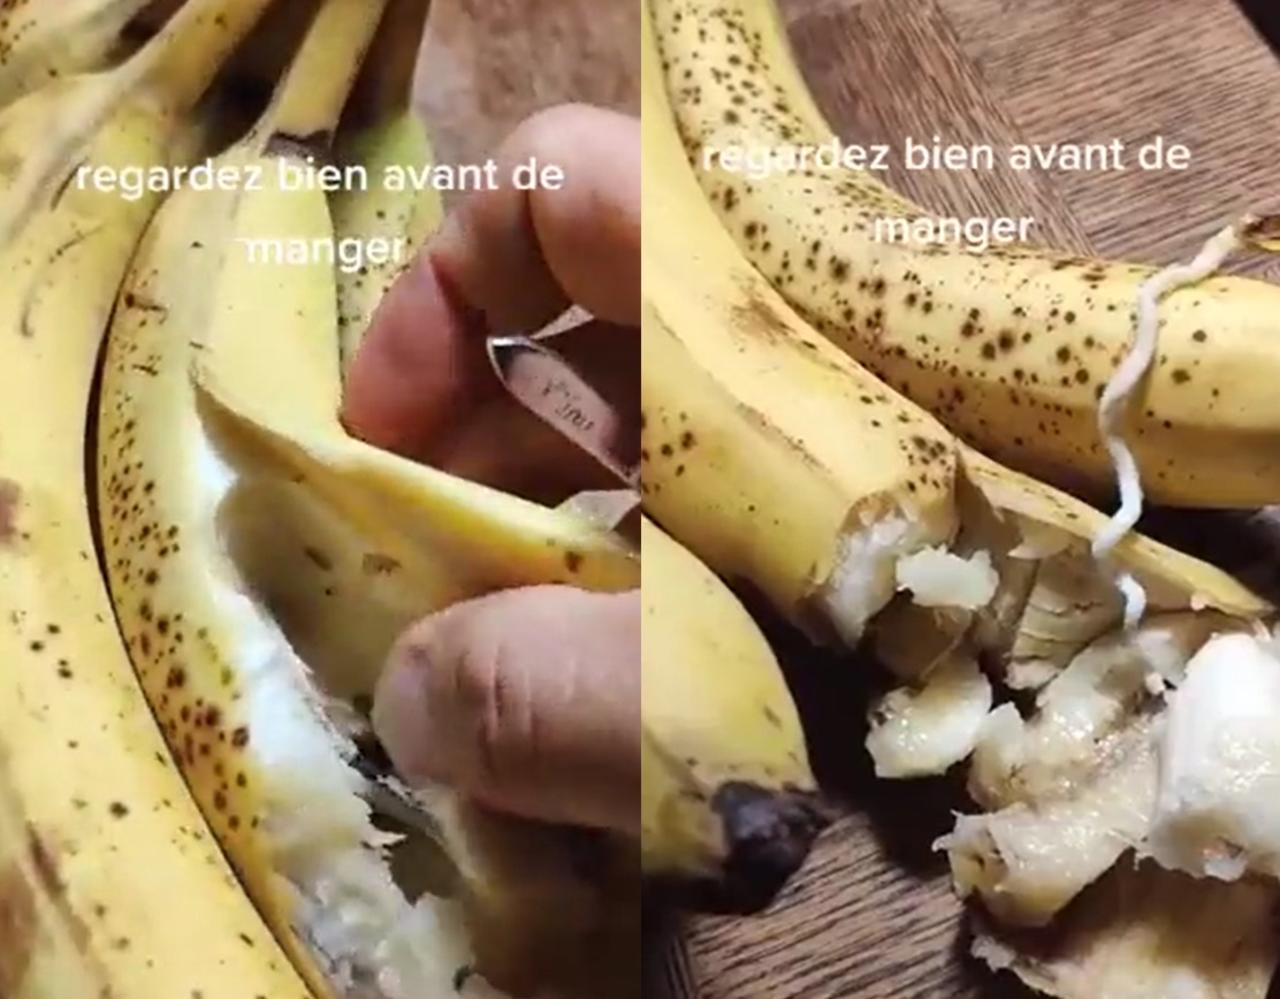 La verdad tras el video de los plátanos llenos de gusanos difundido en WhatsApp